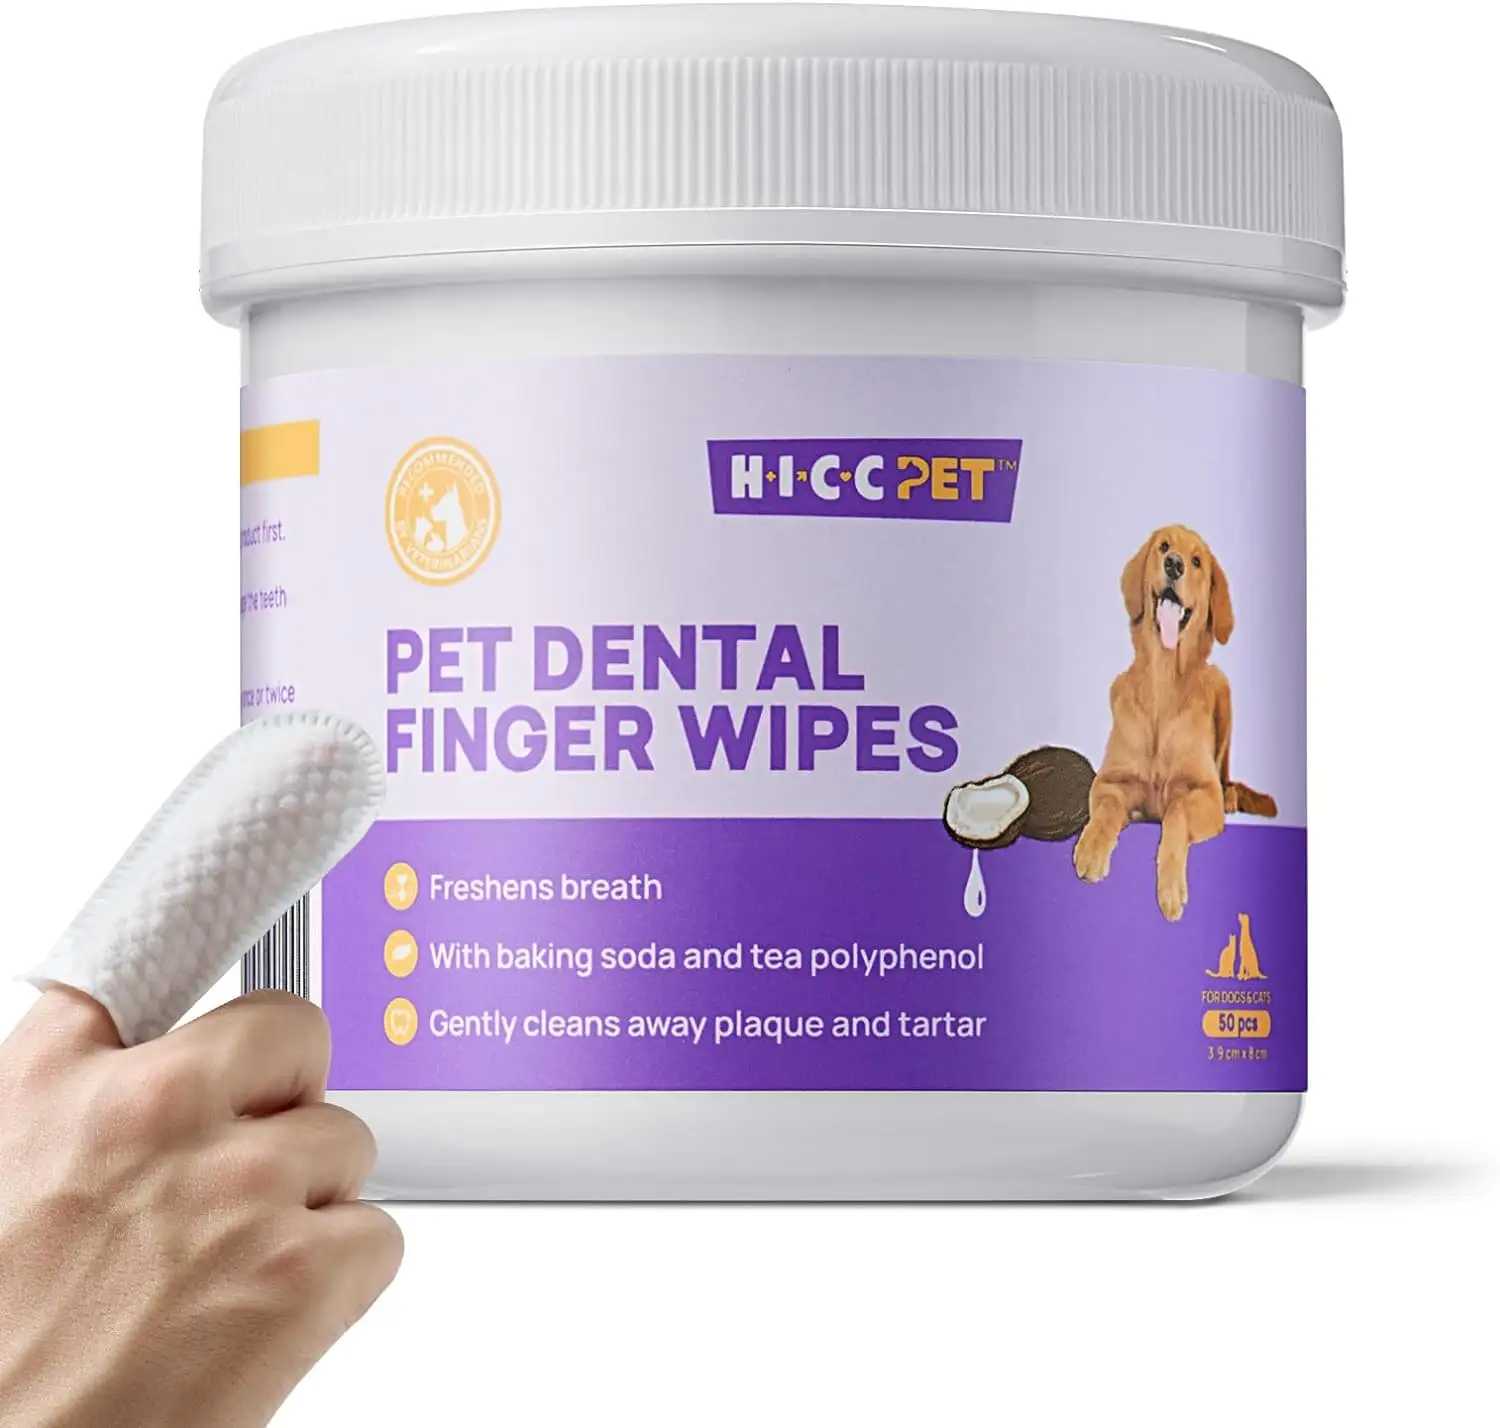 TERRA PET dentes limpeza toalhetes para cães e gatos remover o mau hálito, removendo placa e tártaro Buildup No-Rinse Dog Finger Too